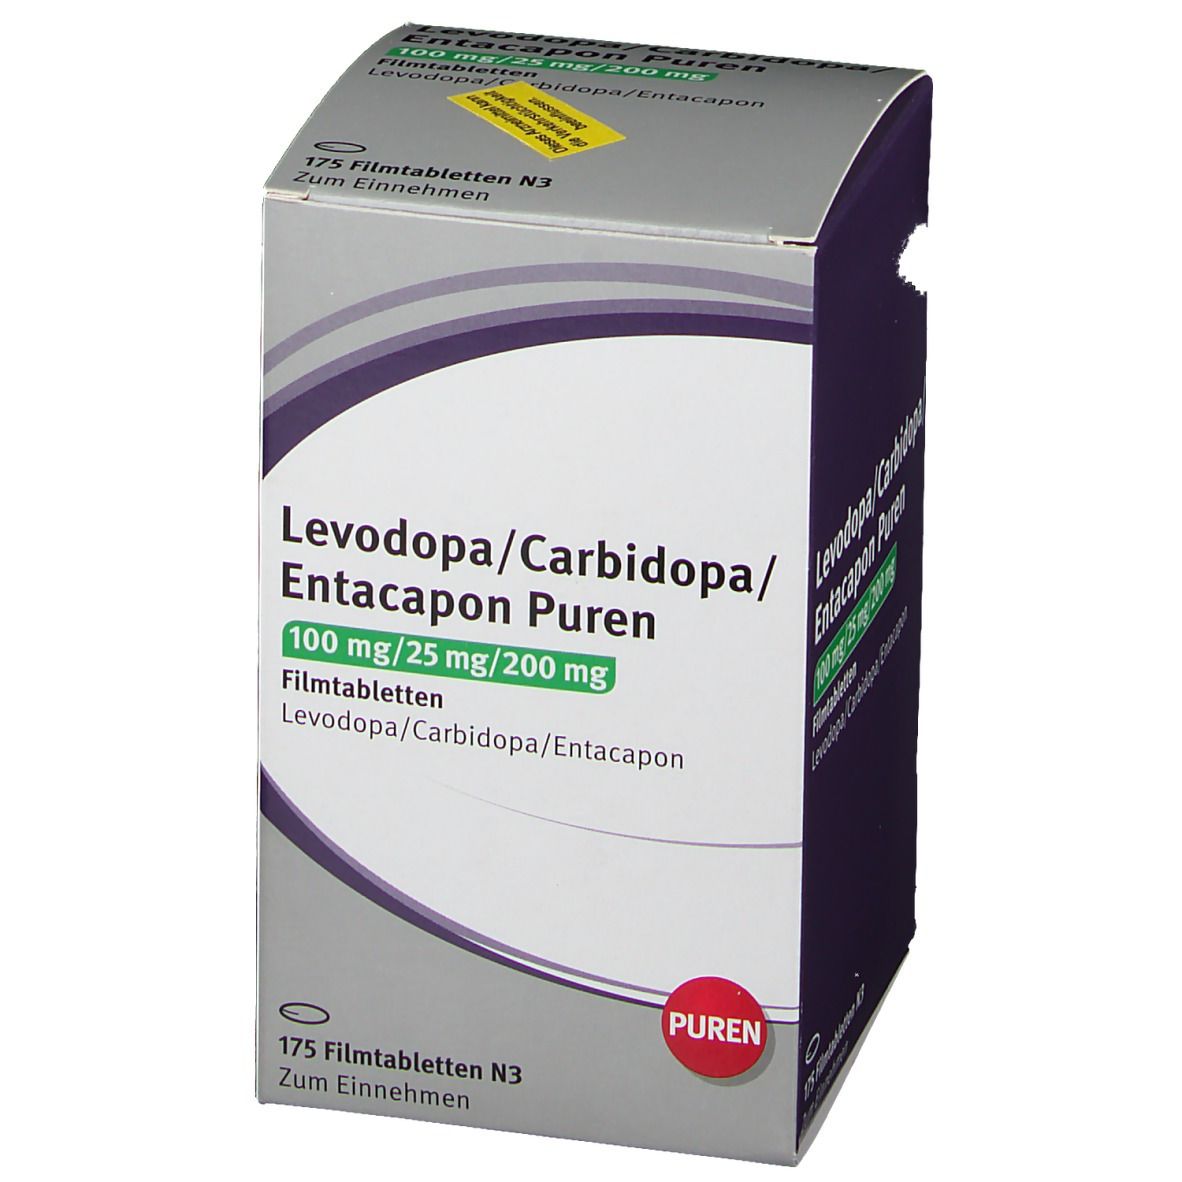 Levodopa/Carbidopa/Entacapon PUREN 100/25/200